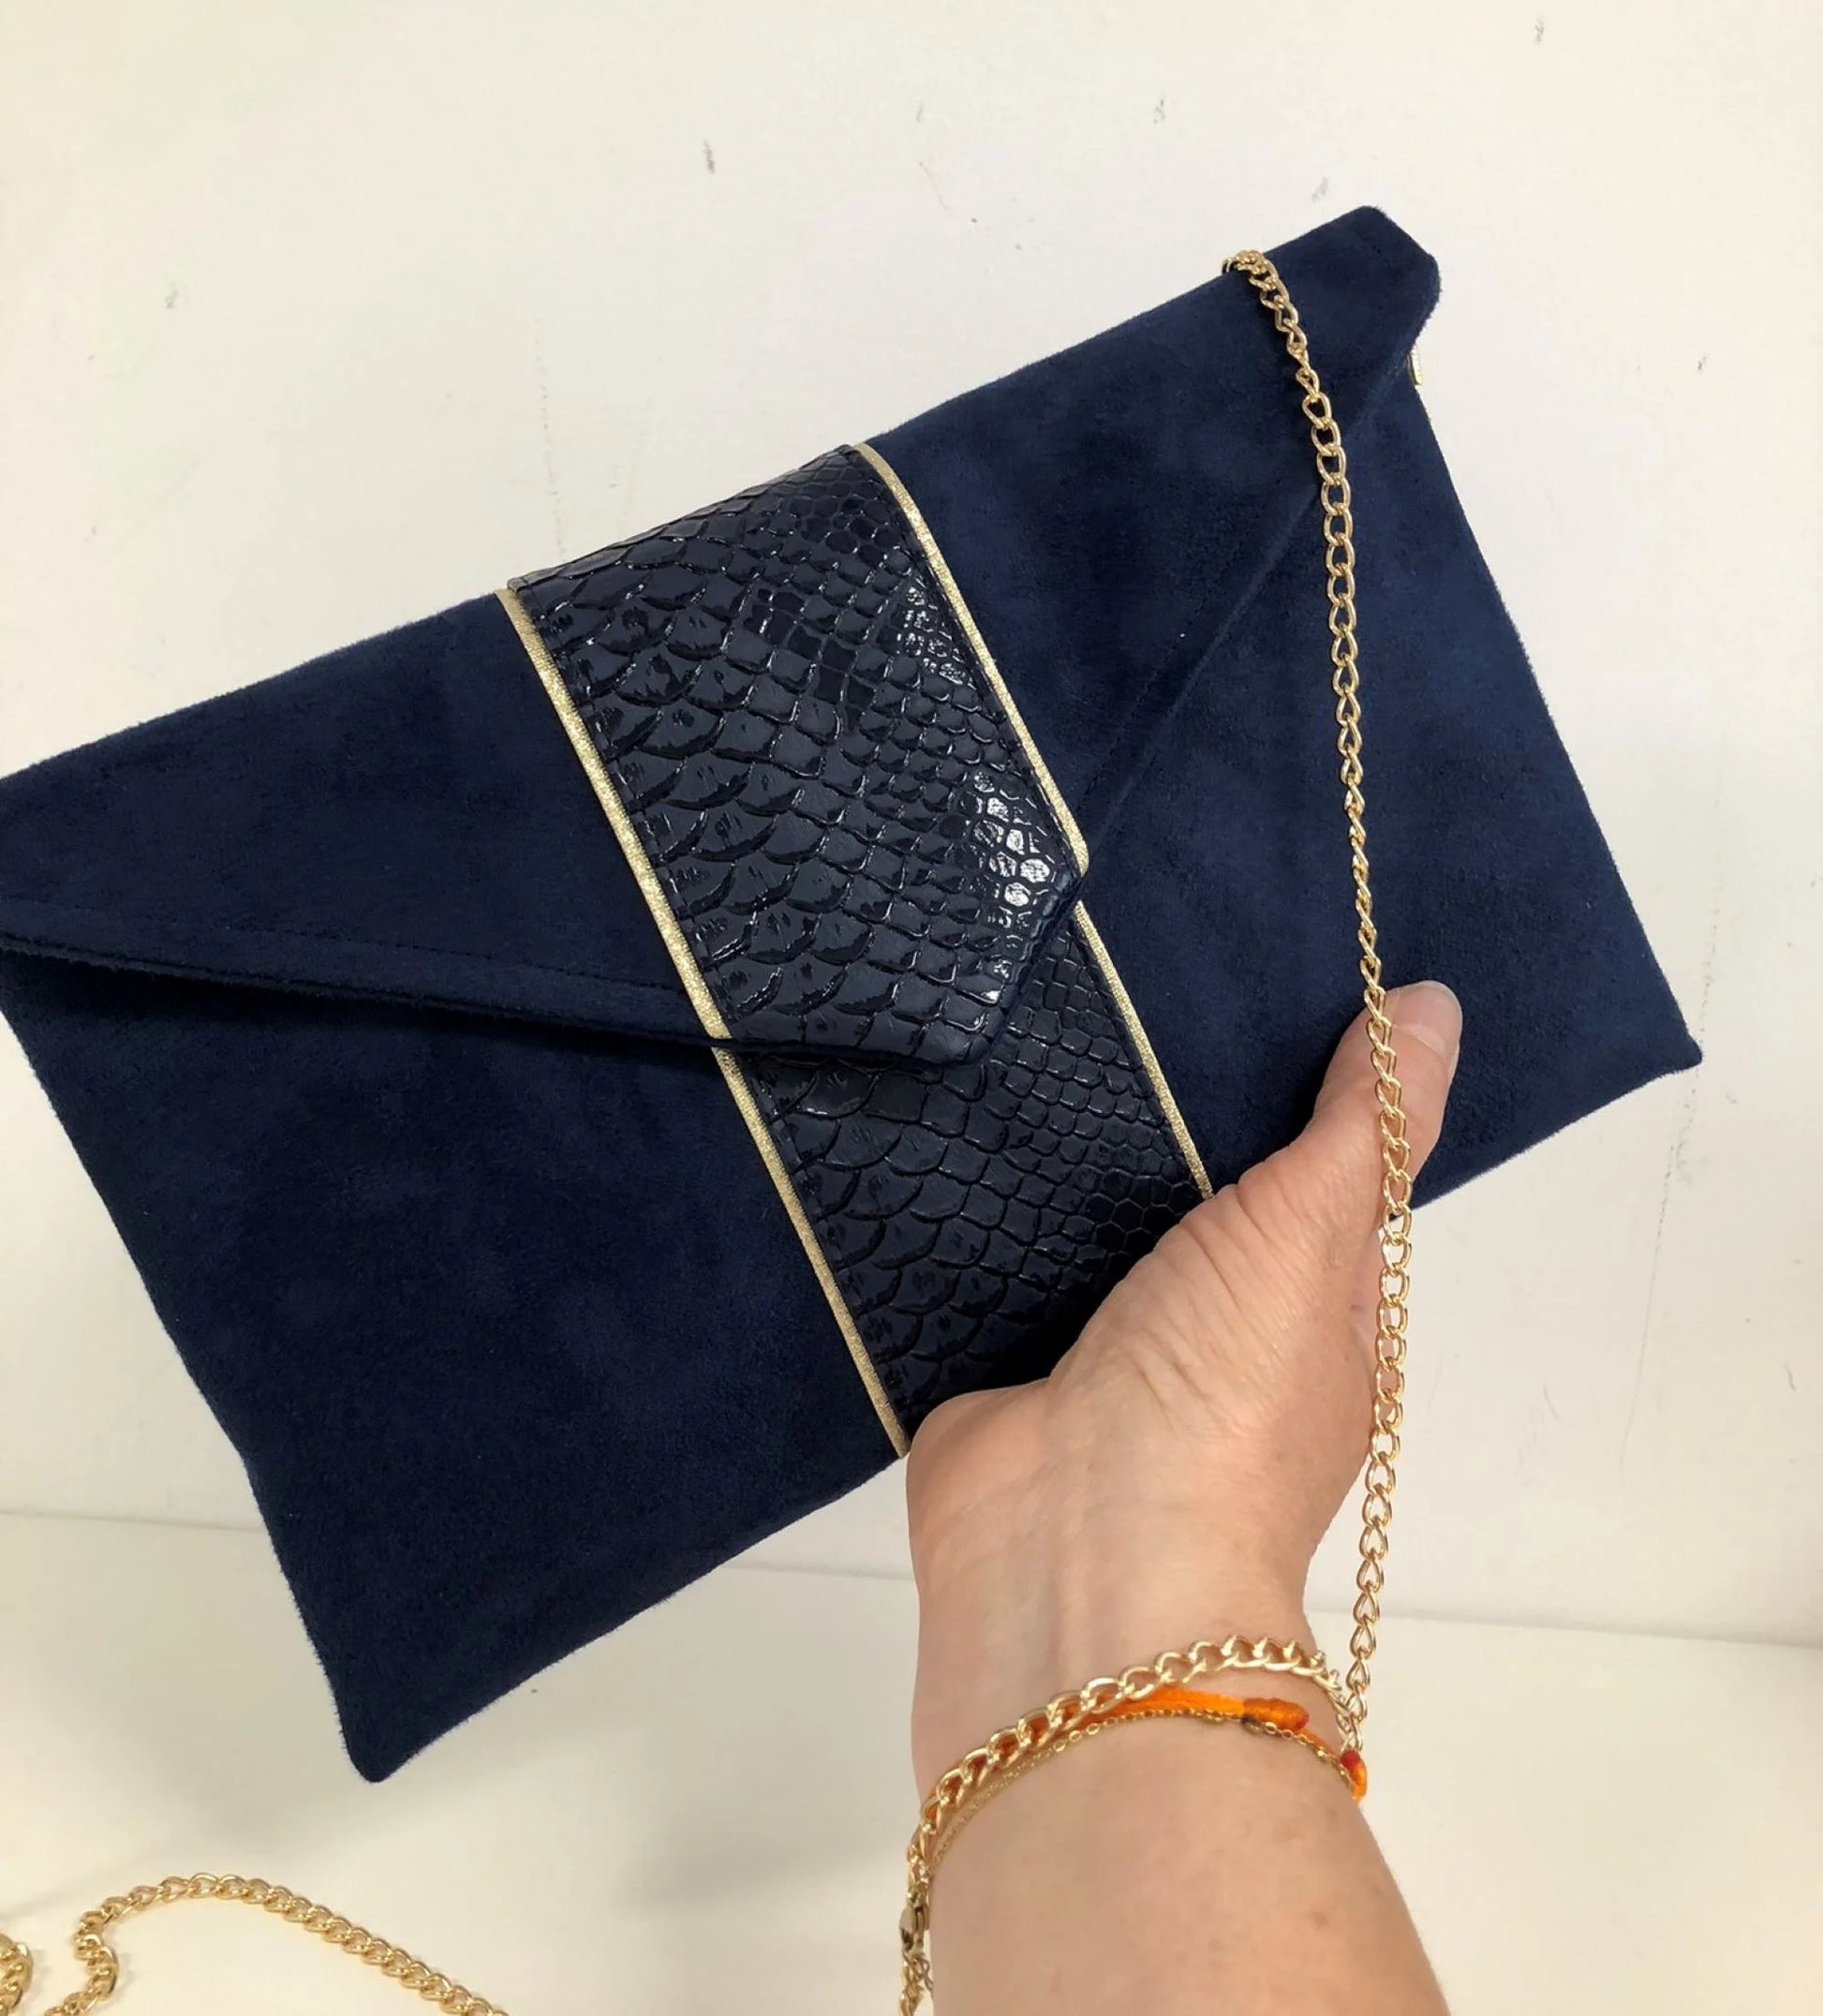 Le sac pochette Isa bleu marine reptile à liseré doré, porté en main.